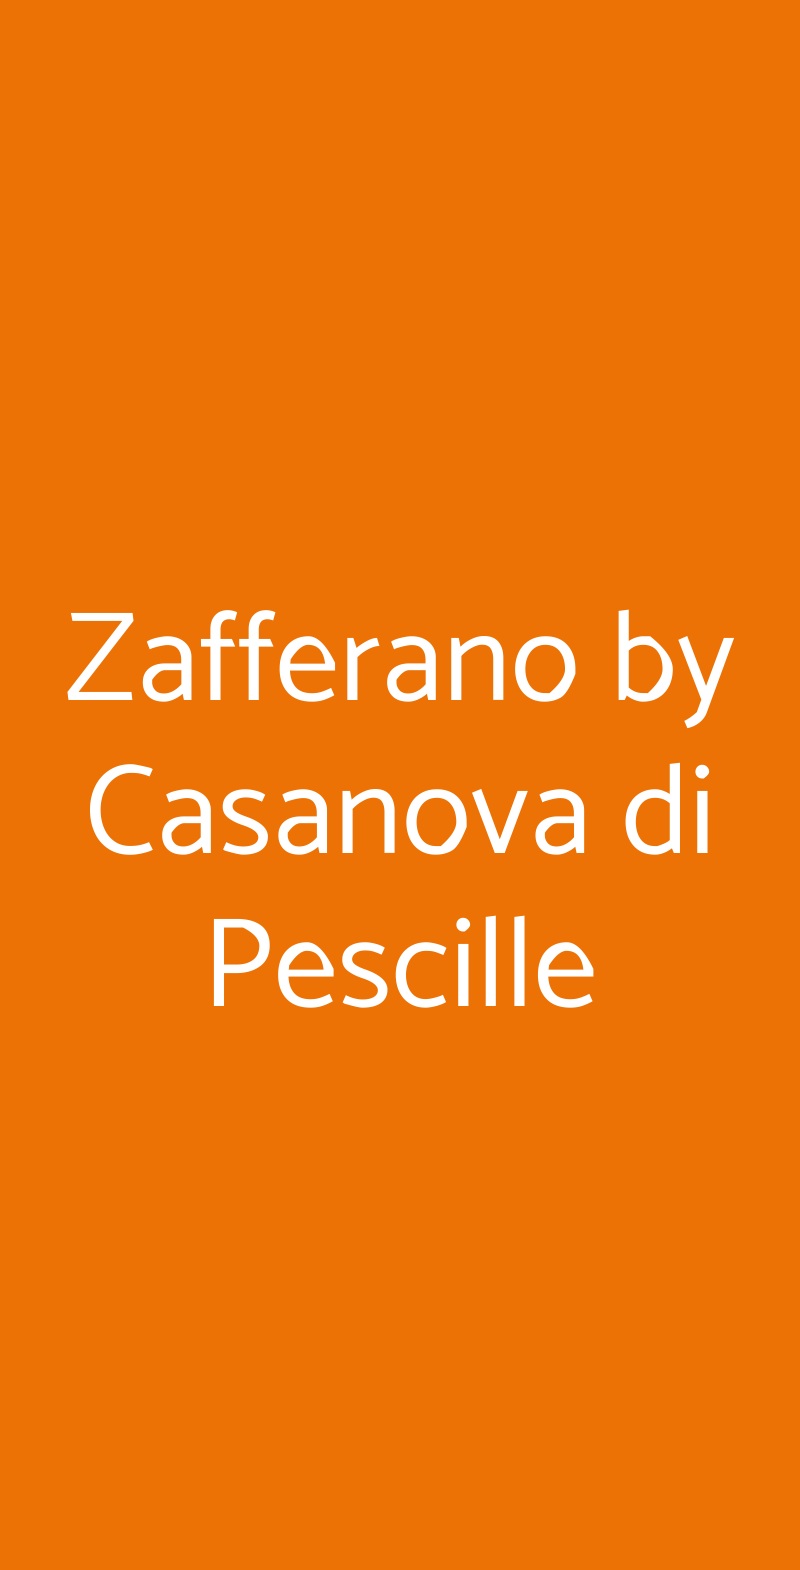 Zafferano by Casanova di Pescille San Gimignano menù 1 pagina